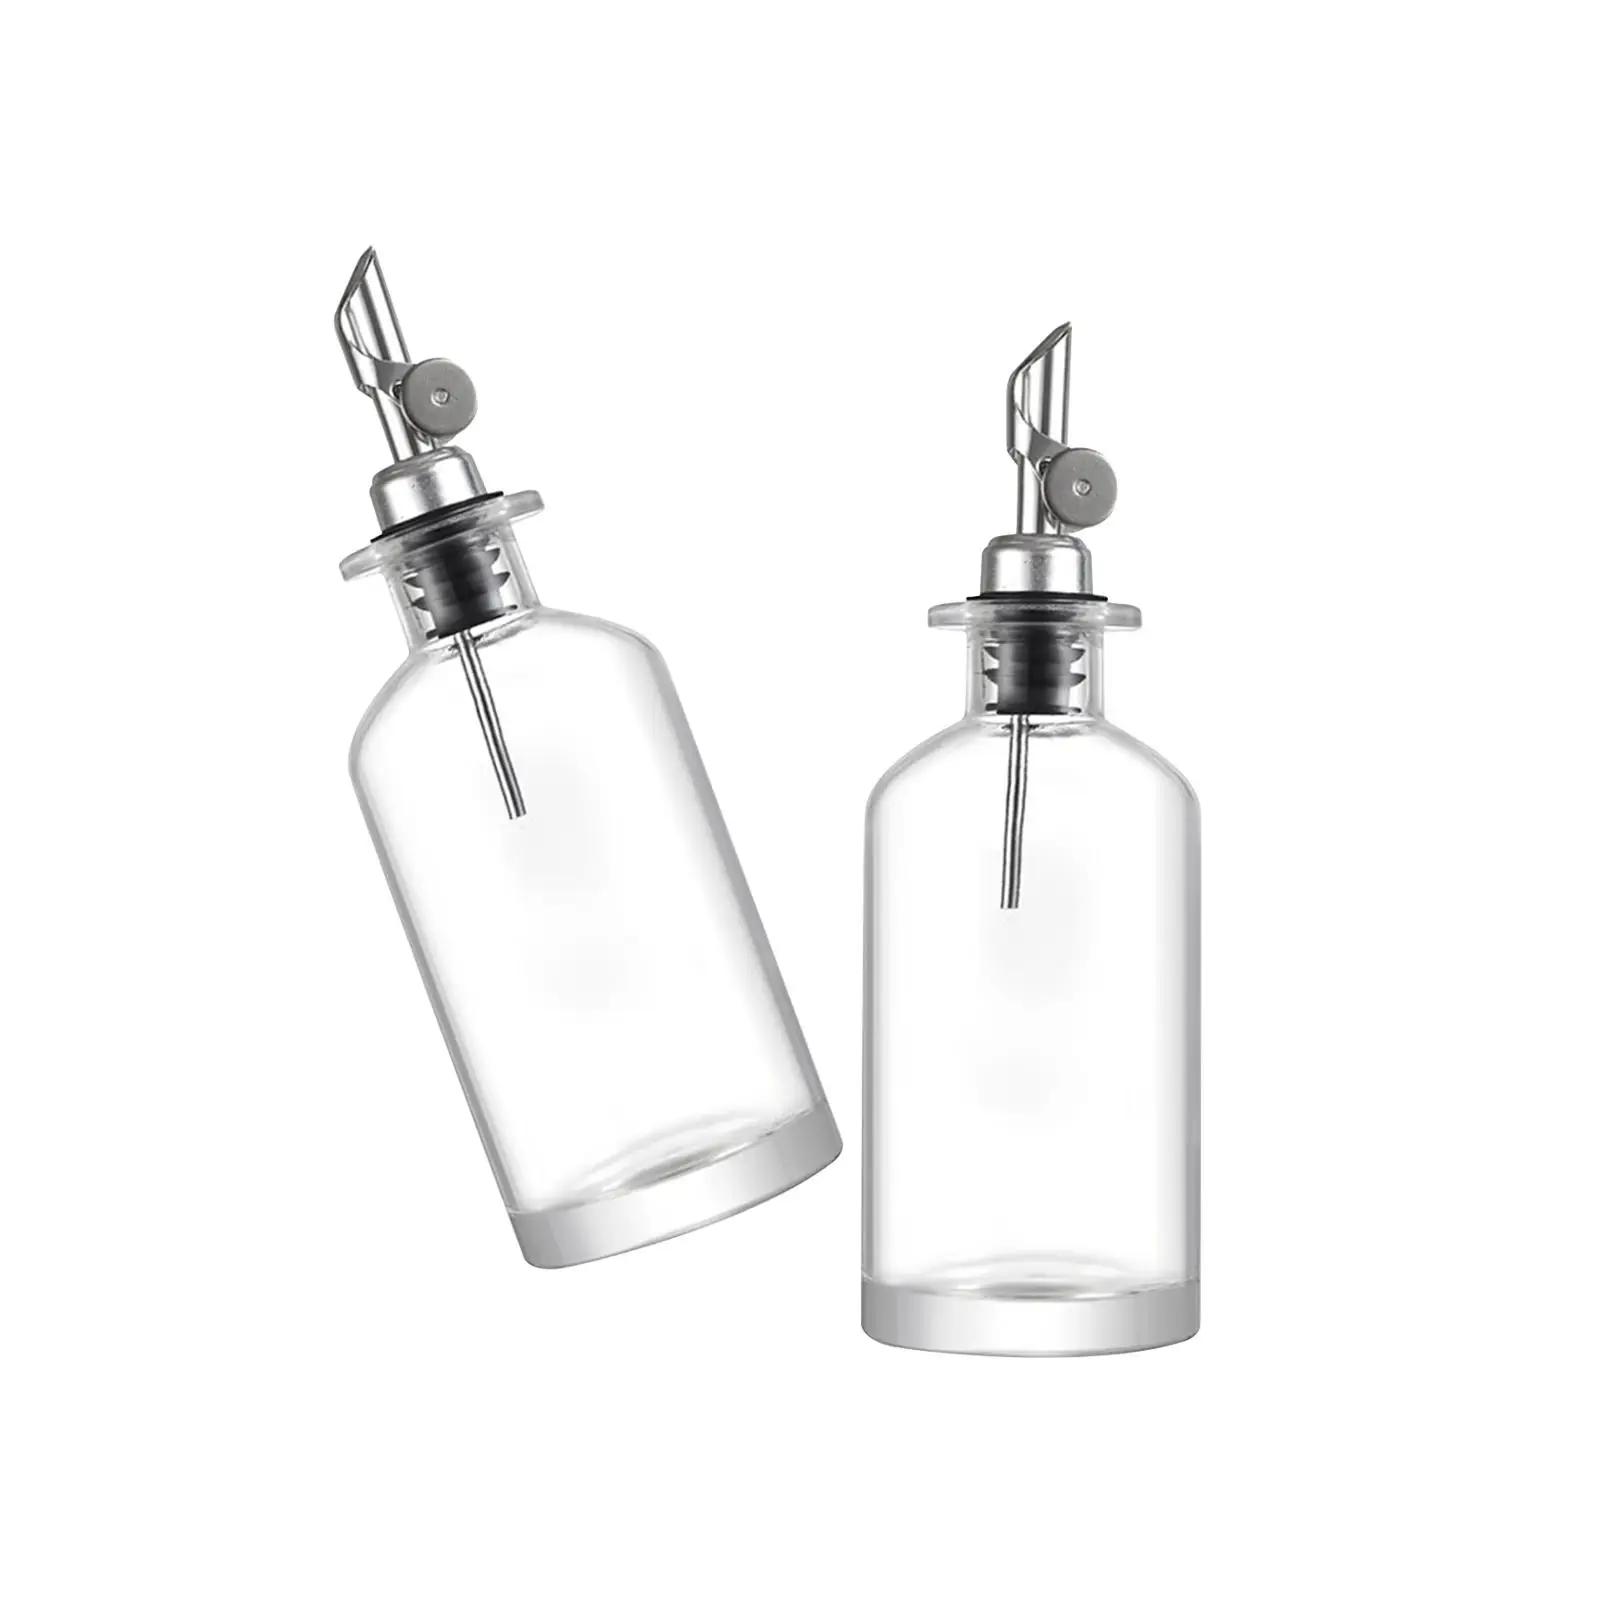 Glass Oil Bottle Vinegar Sauce Holder Dispenser for Gift Barbecue Grilling